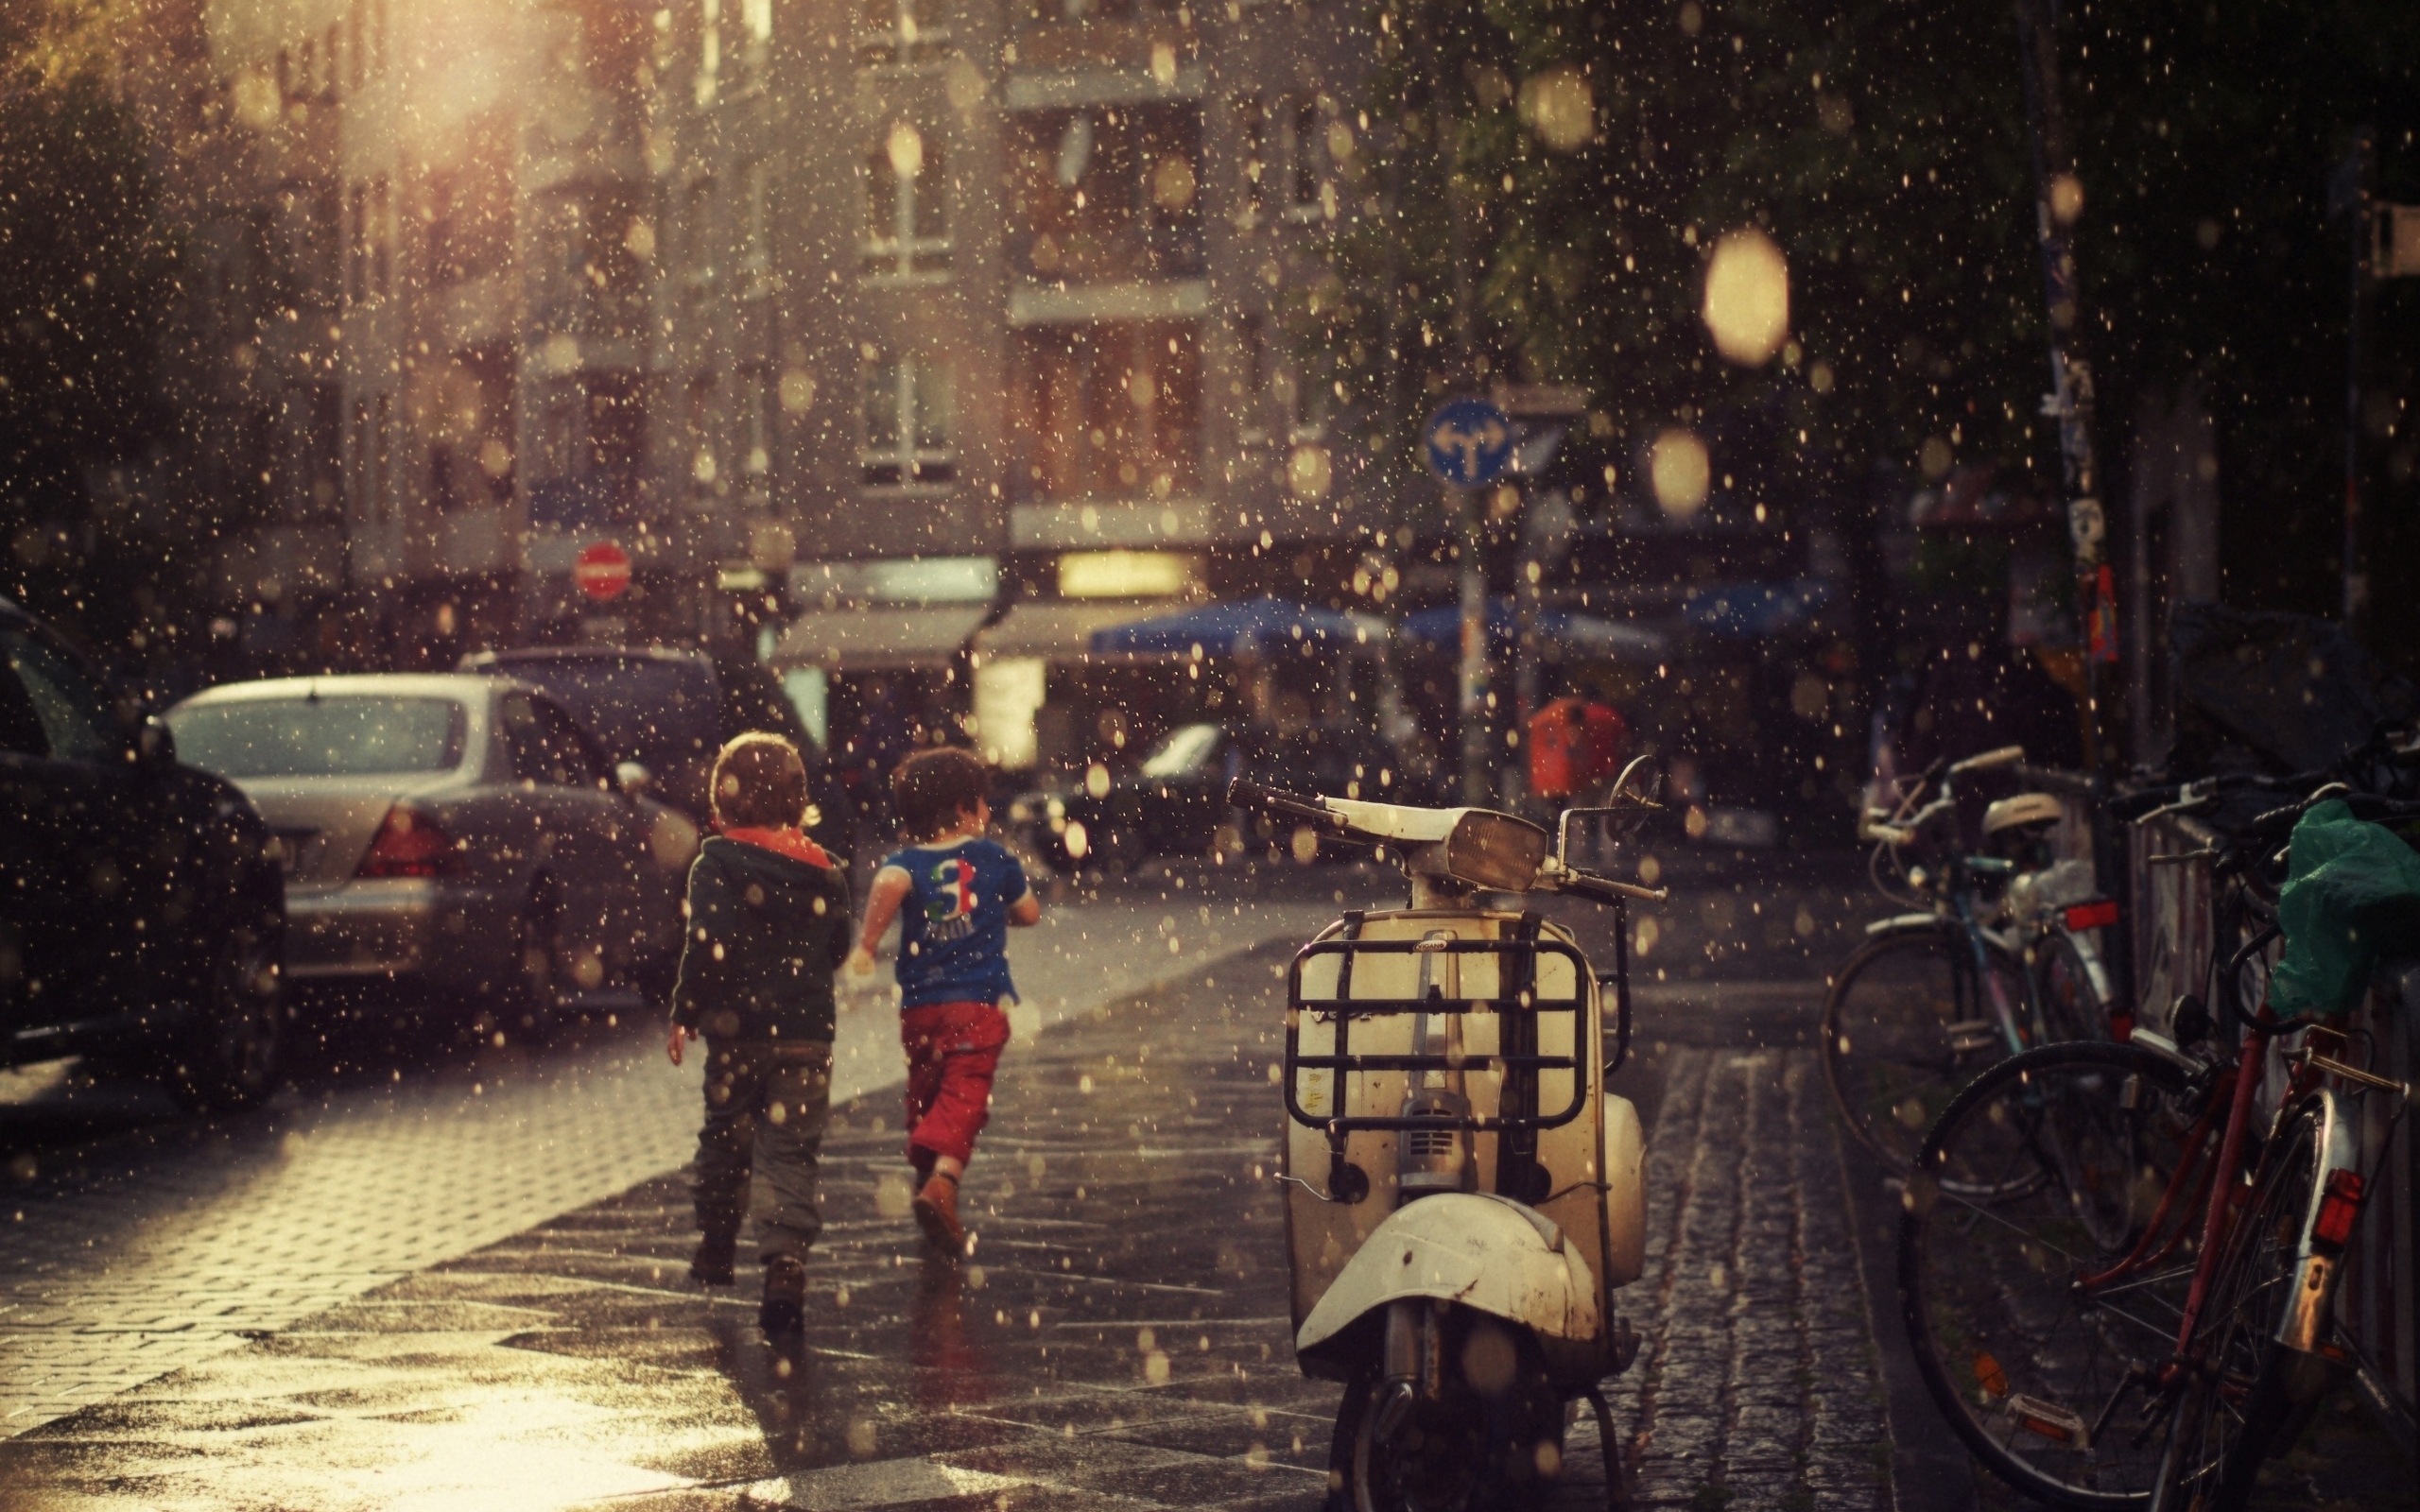 3d обои Грибной дождь на улице европейского города, дети бегут по мокрой мостовой, вокруг стоят велосипеды и мотороллер  мотоциклы # 57015